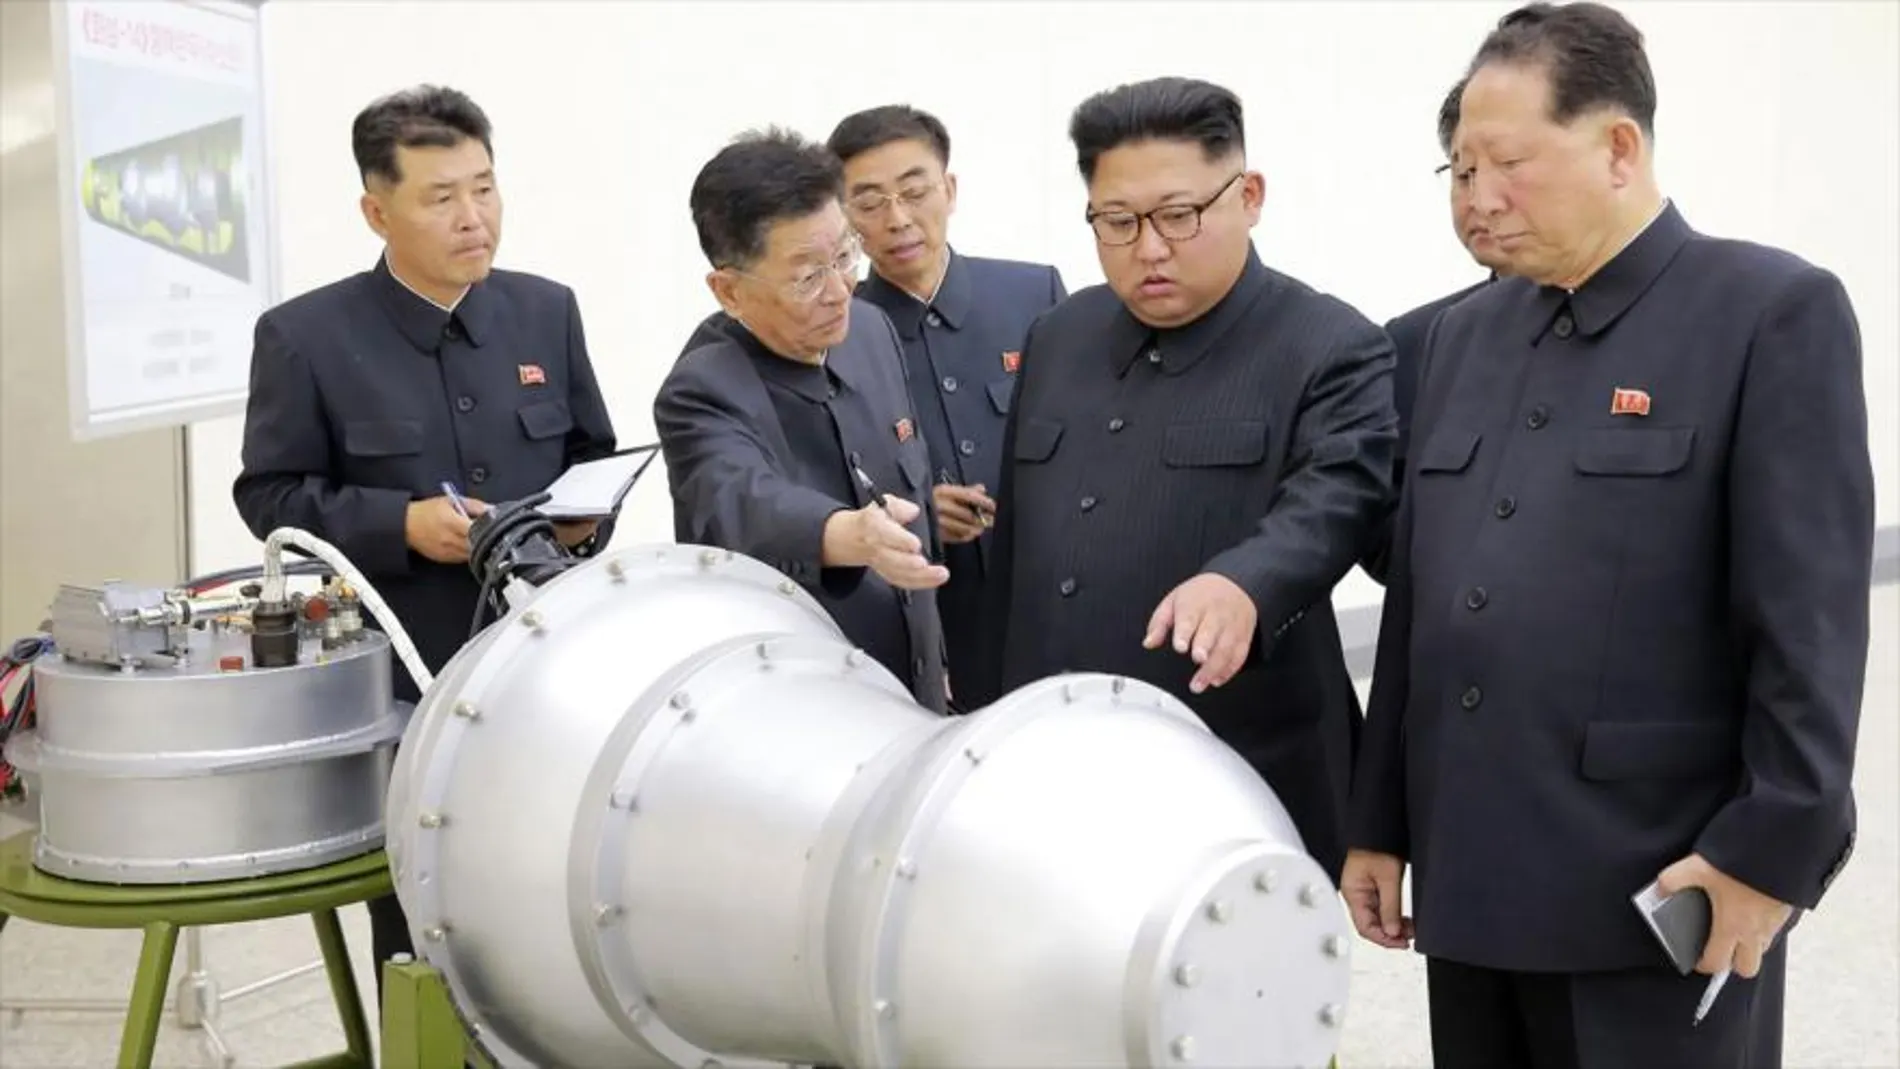 El líder norcoreano, Kim Jong-un, inspecciona una carcasa metálica, probablemente bomba de hidrógeno, el 2 de septiembre de 2017.